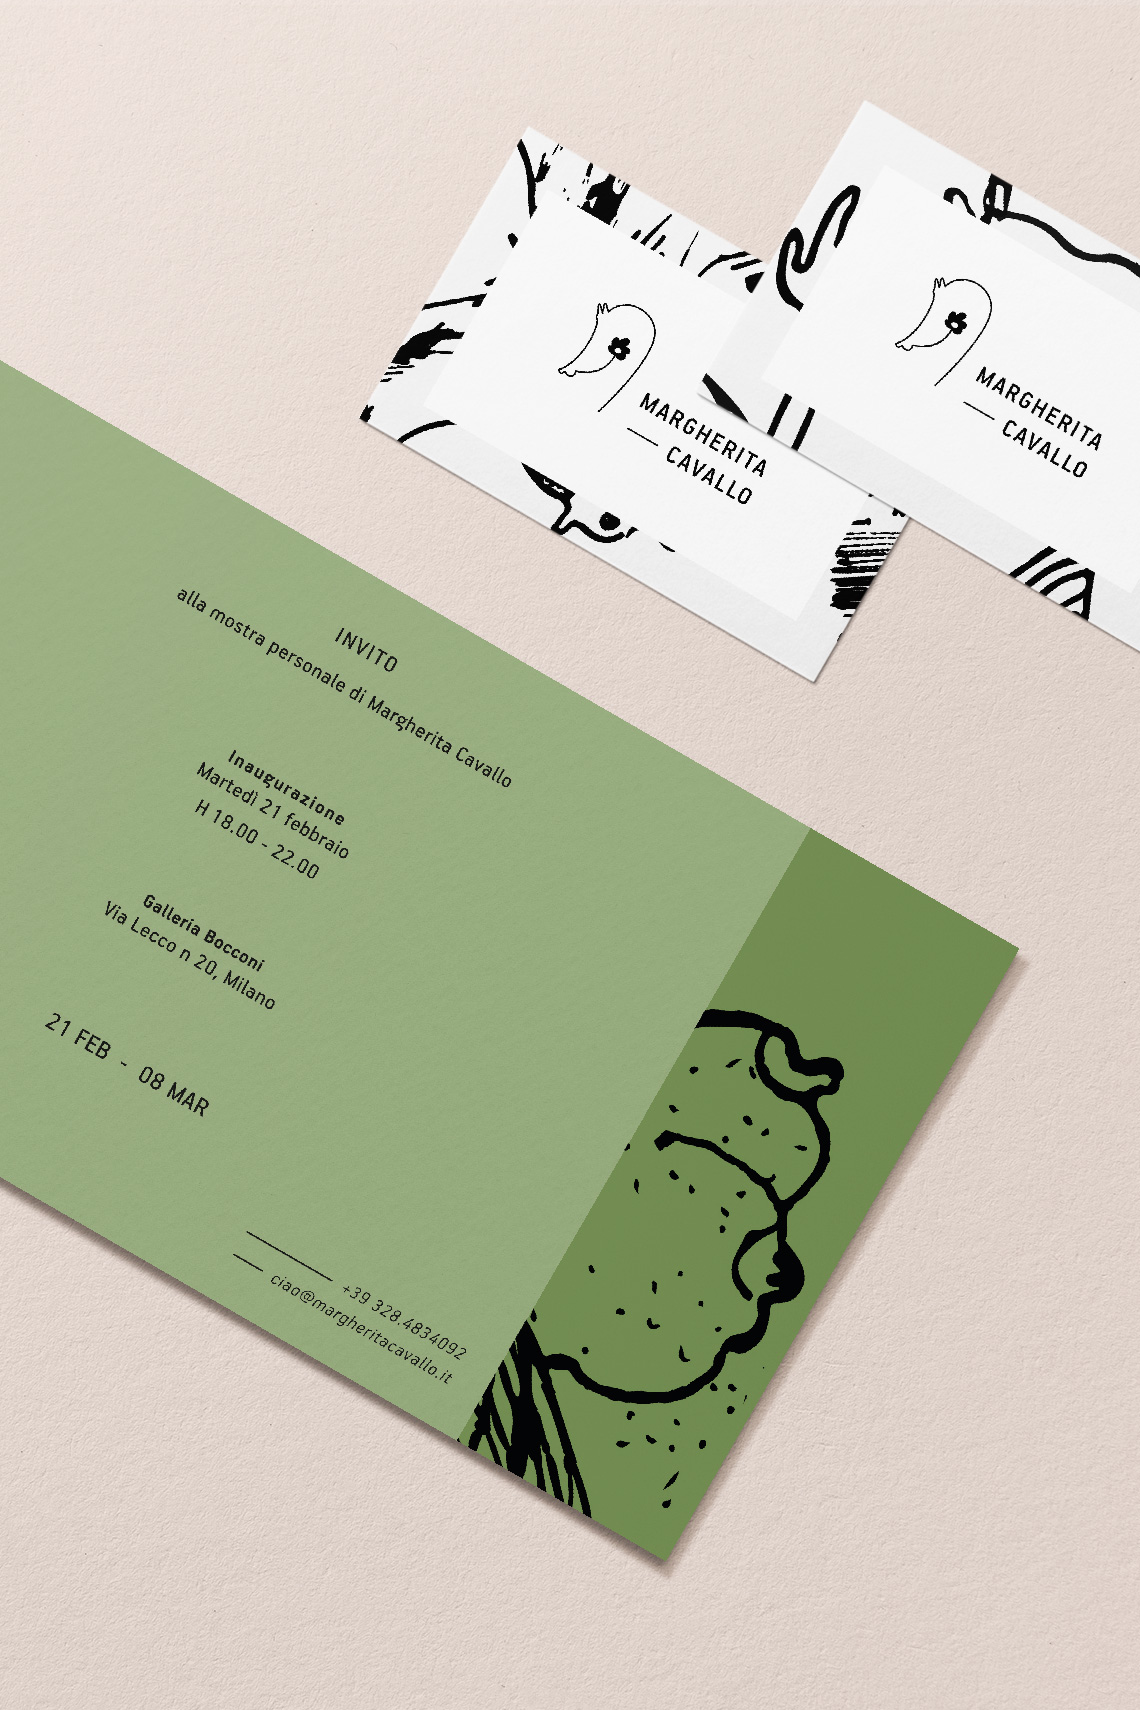 margherita cavallo visual identity drogheria studio business cards invitations